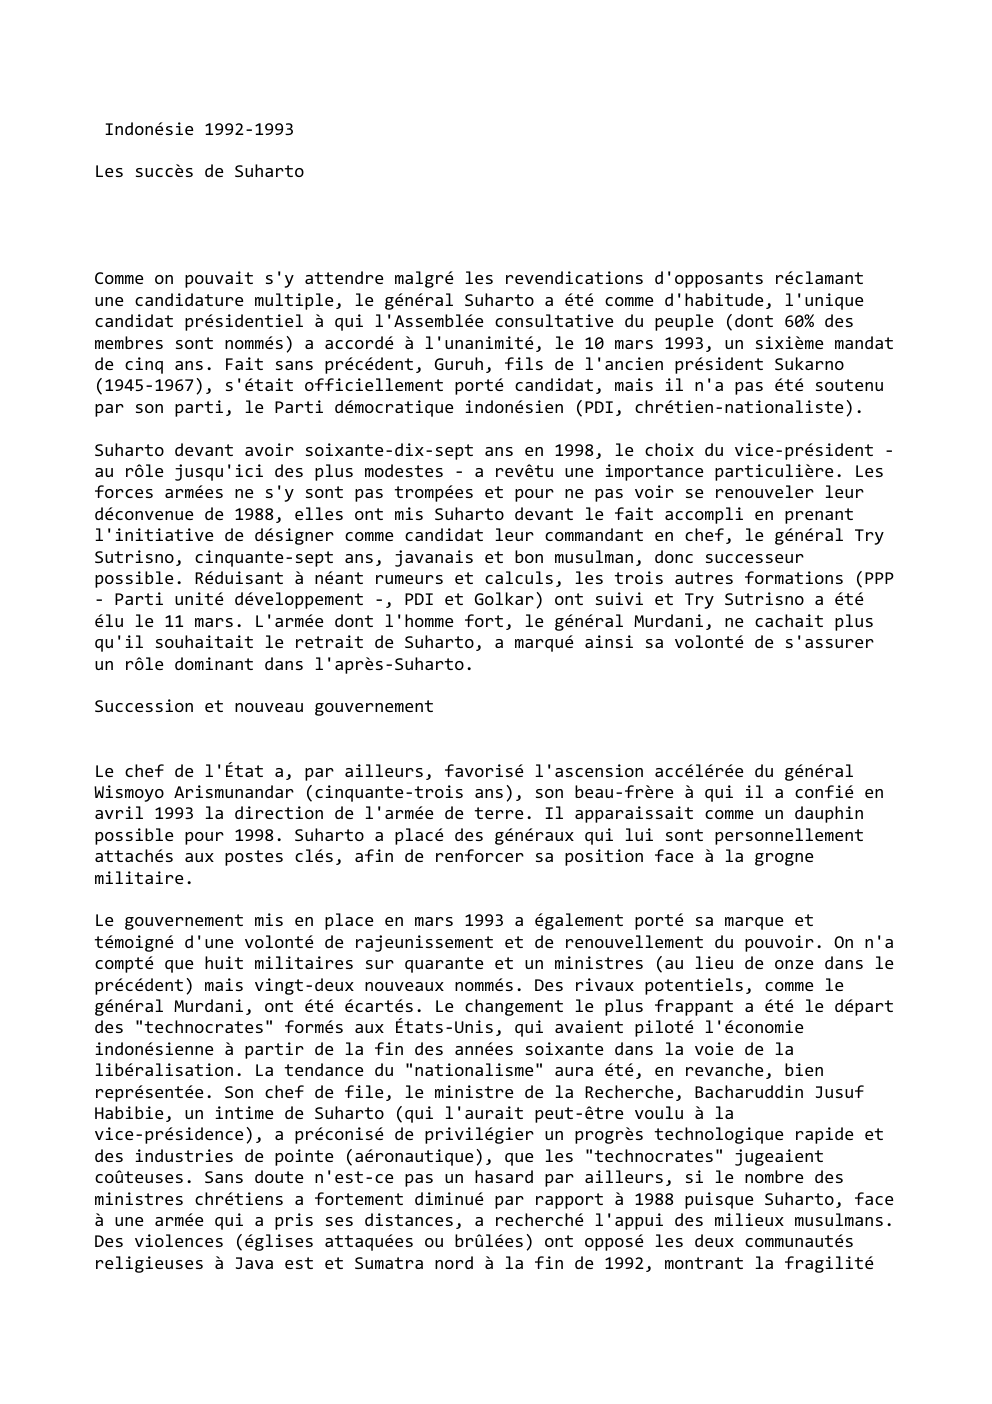 Prévisualisation du document Indonésie 1992-1993
Les succès de Suharto

Comme on pouvait s'y attendre malgré les revendications d'opposants réclamant
une candidature multiple, le...